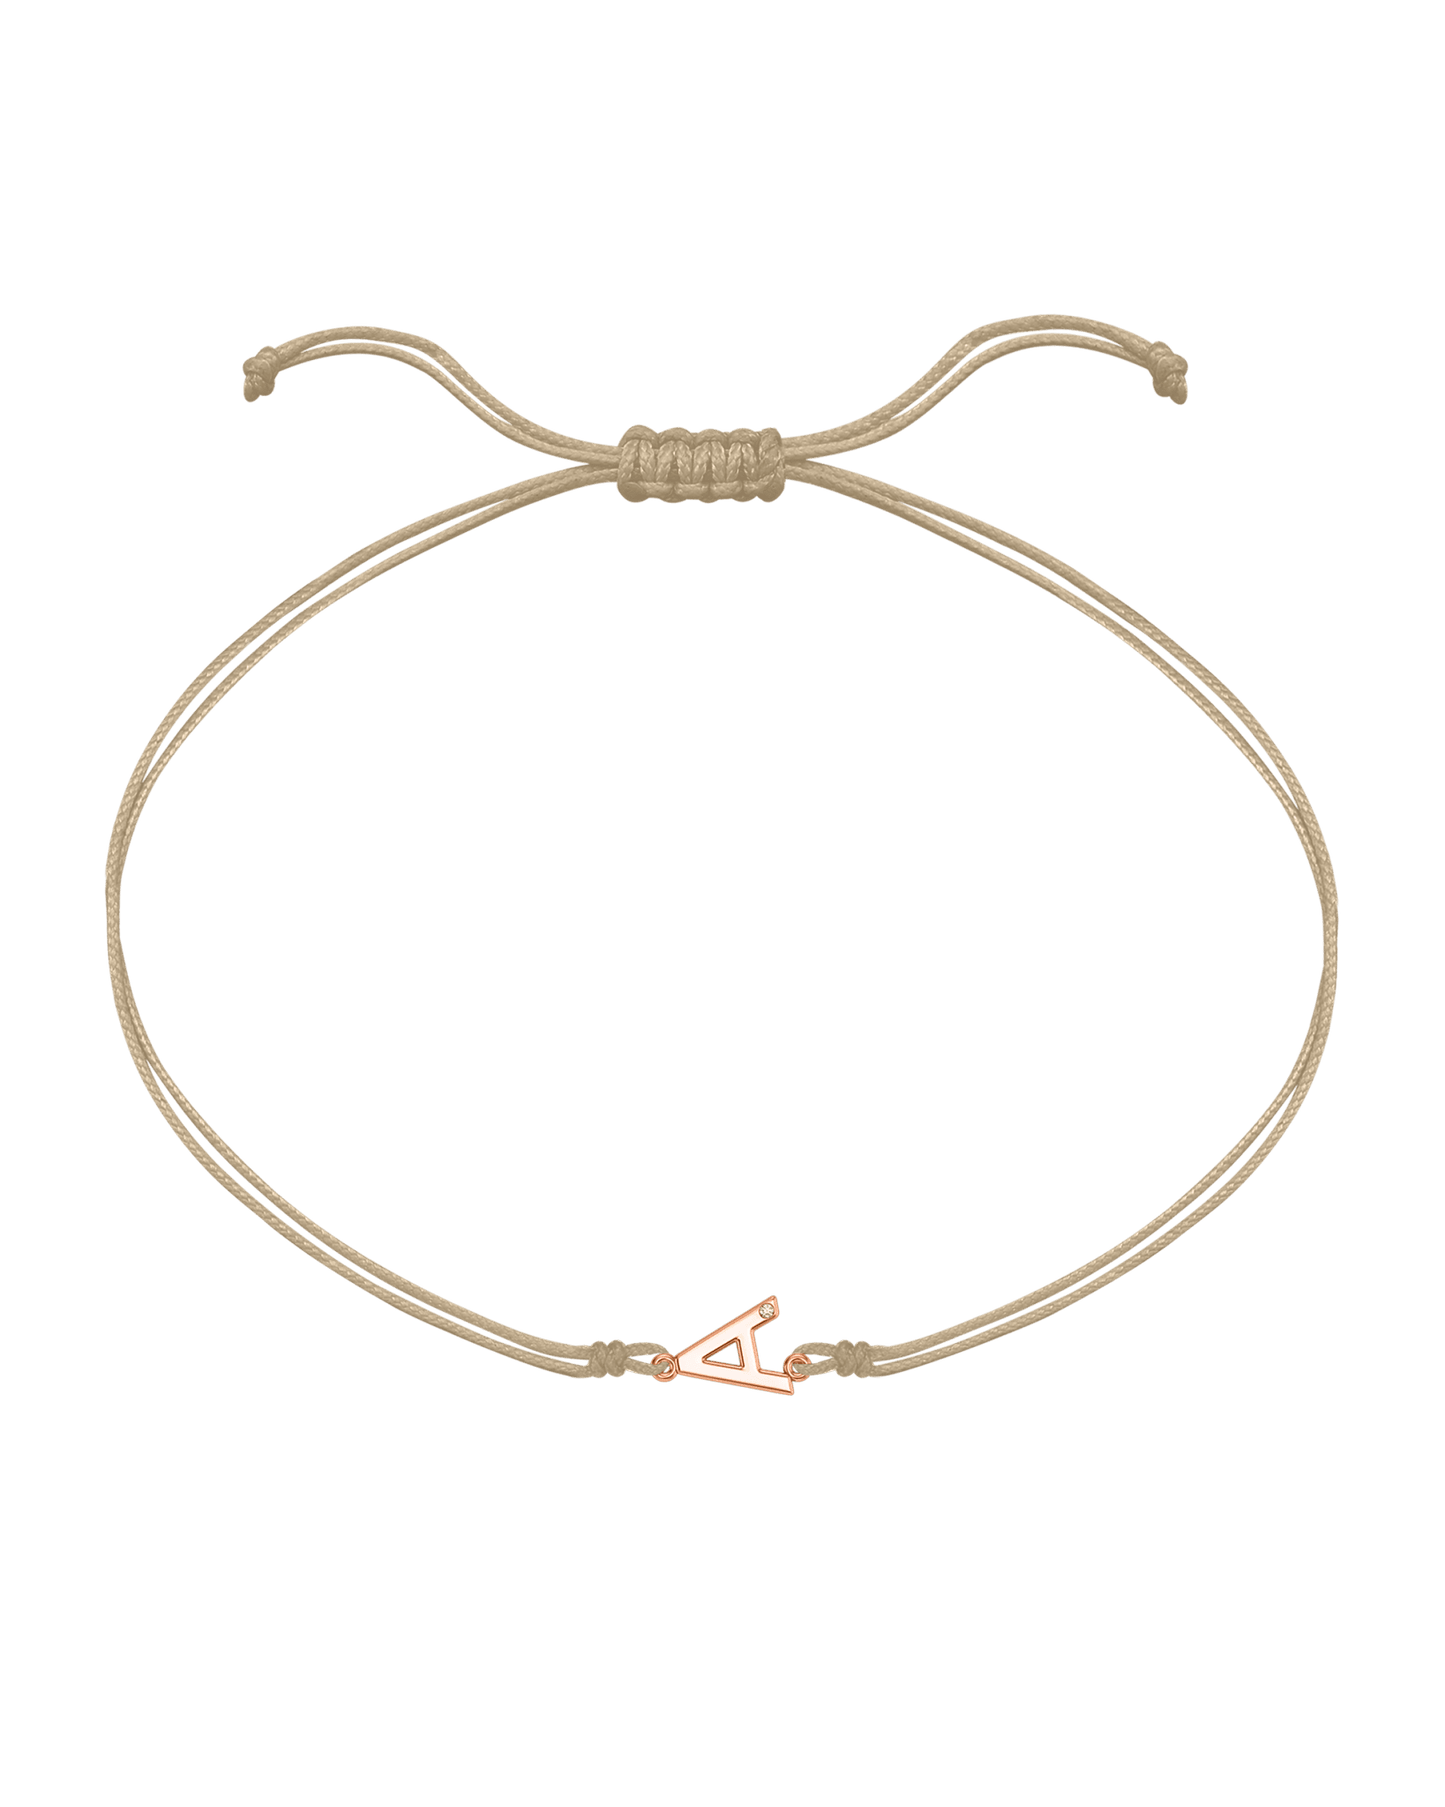 Initial String of Love - 14K Rose Gold Bracelets 14K Solid Gold Sand 